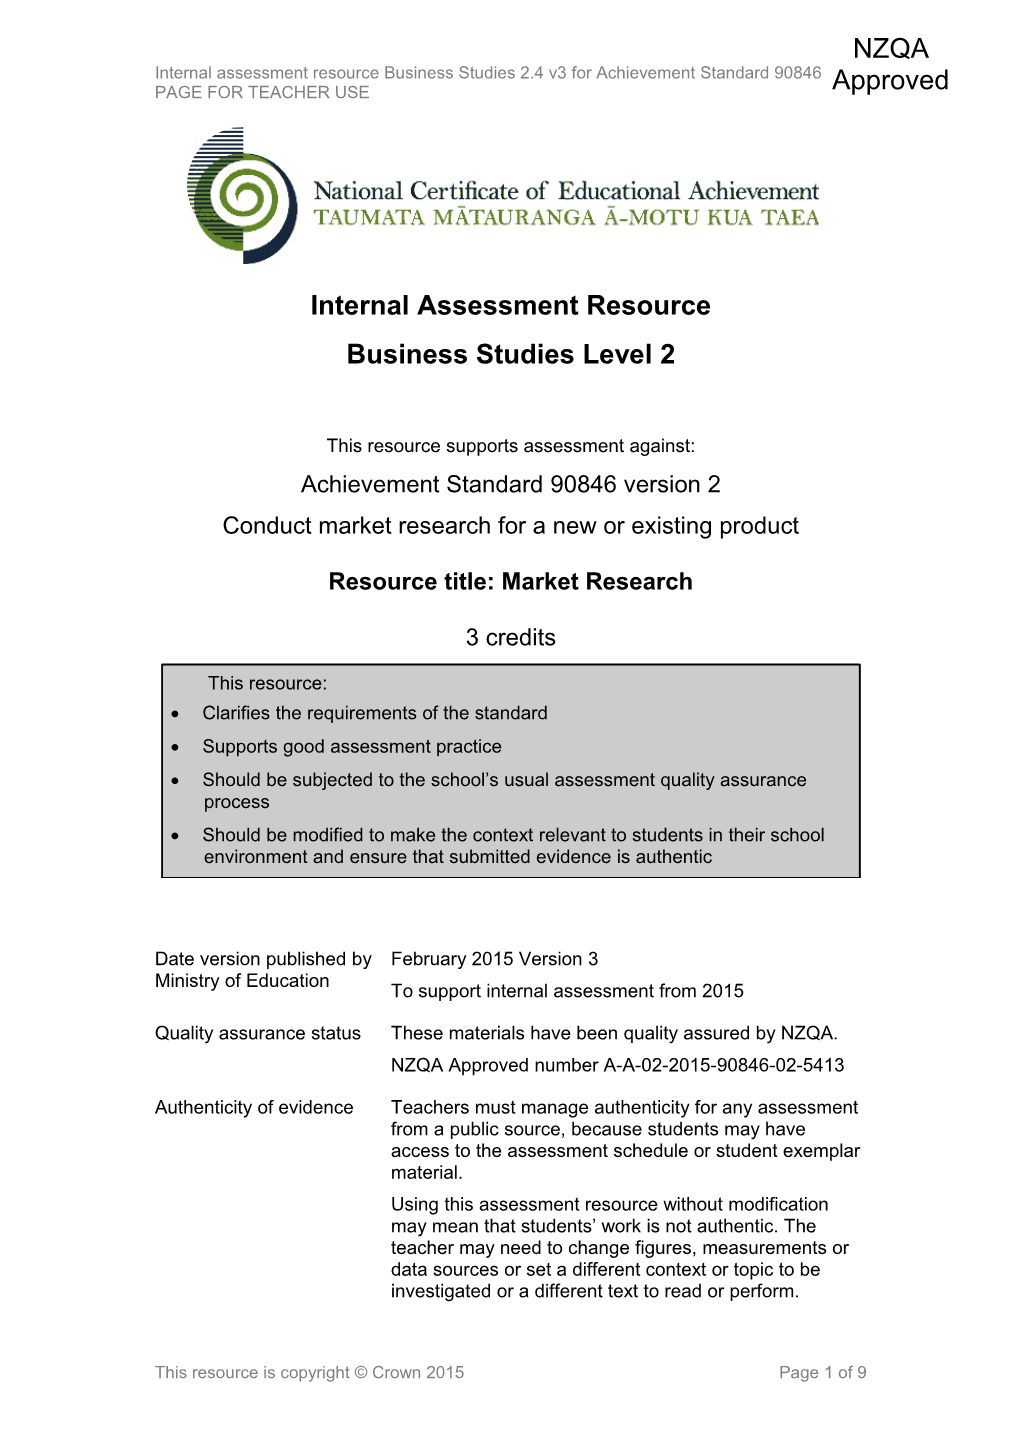 Level 2 Business Studies Internal Assessment Resource